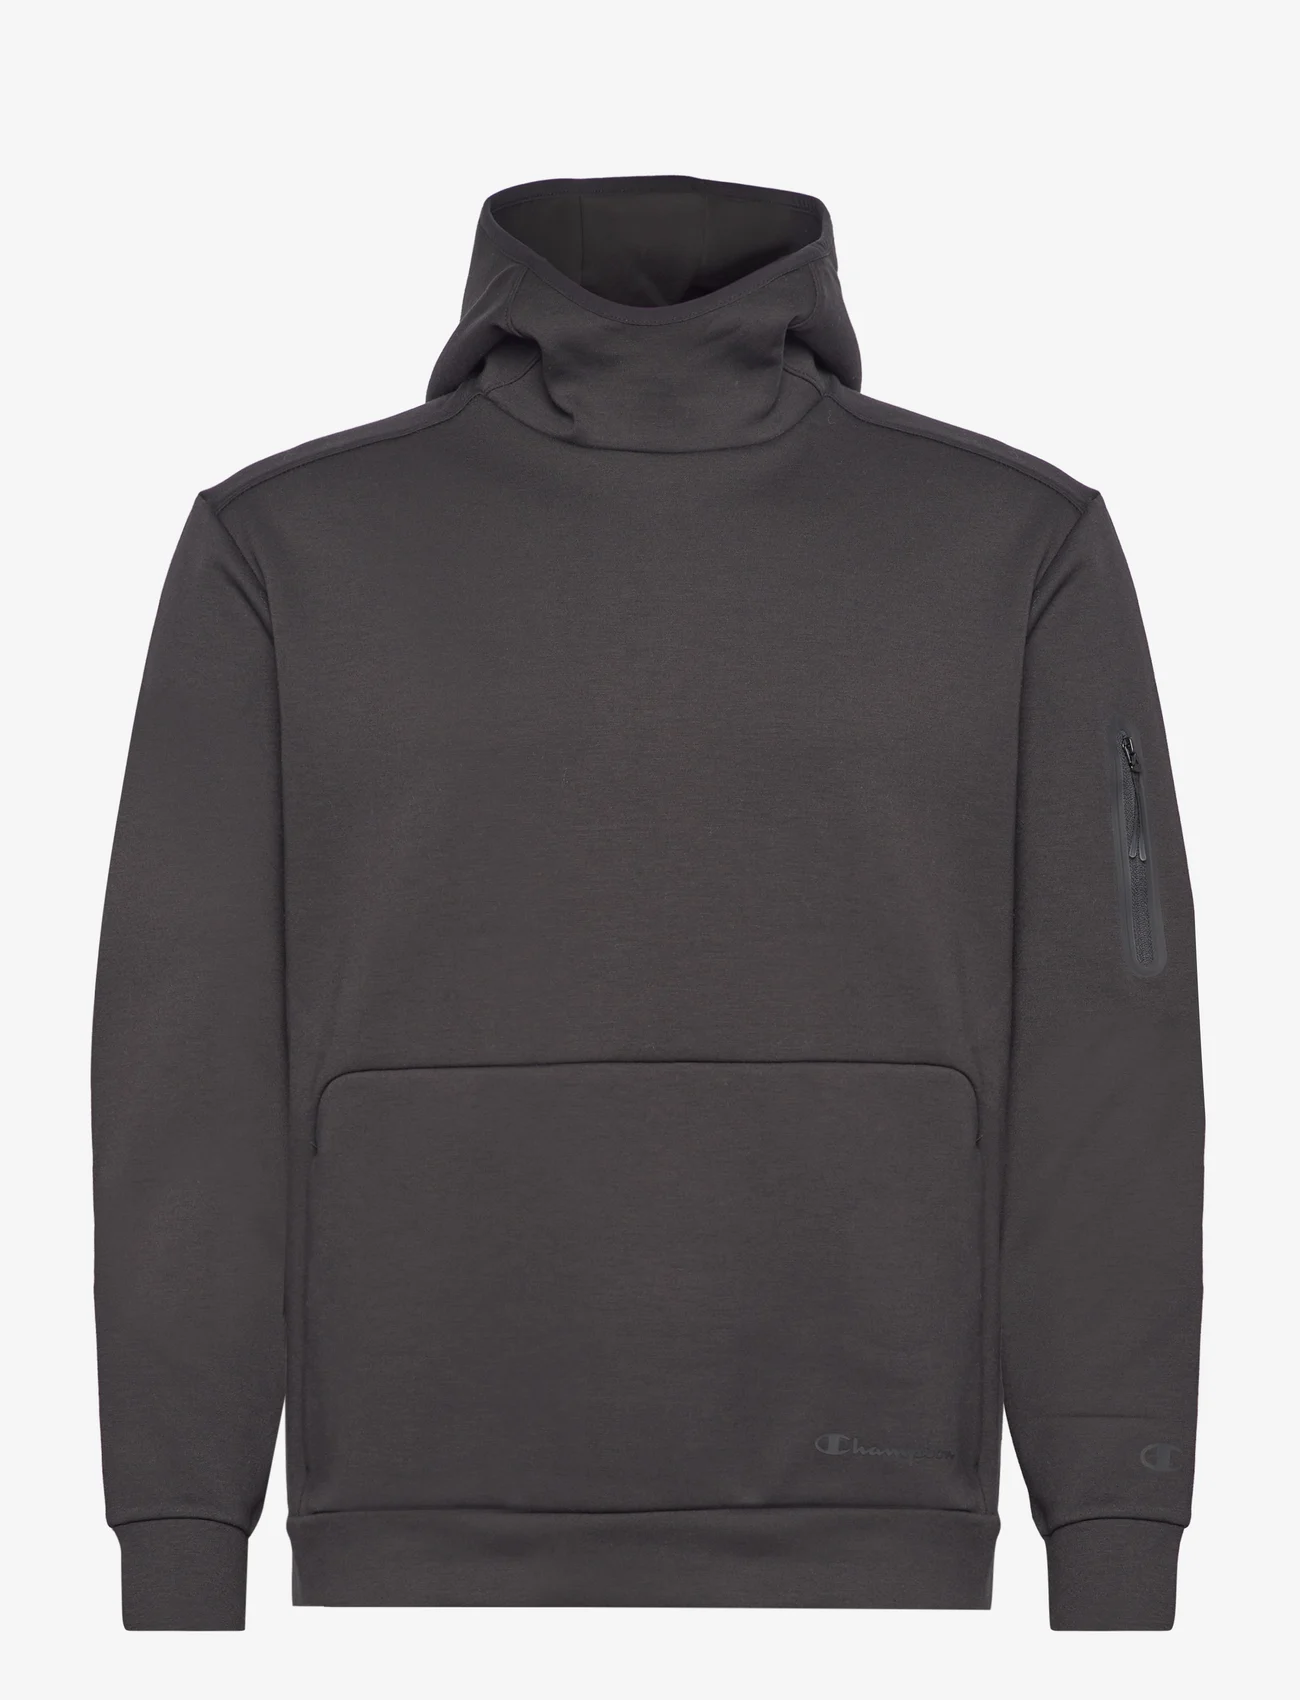 Champion - Hooded Sweatshirt - hættetrøjer - black beauty - 0